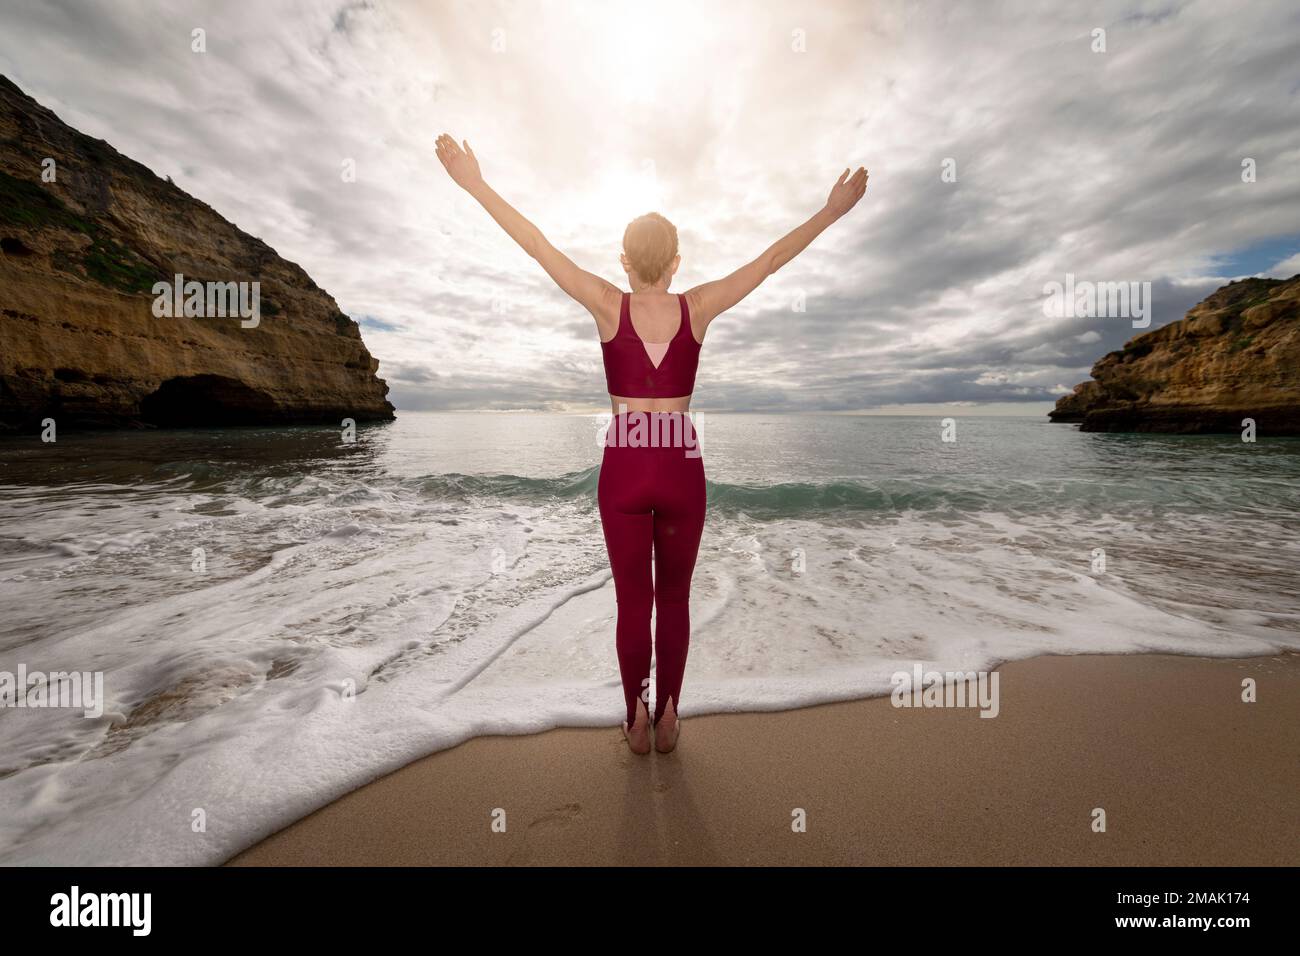 Rückansicht einer sportlichen Frau, die am Meer steht, mit erhobenen Armen, um dem Alltag zu entfliehen. Stockfoto